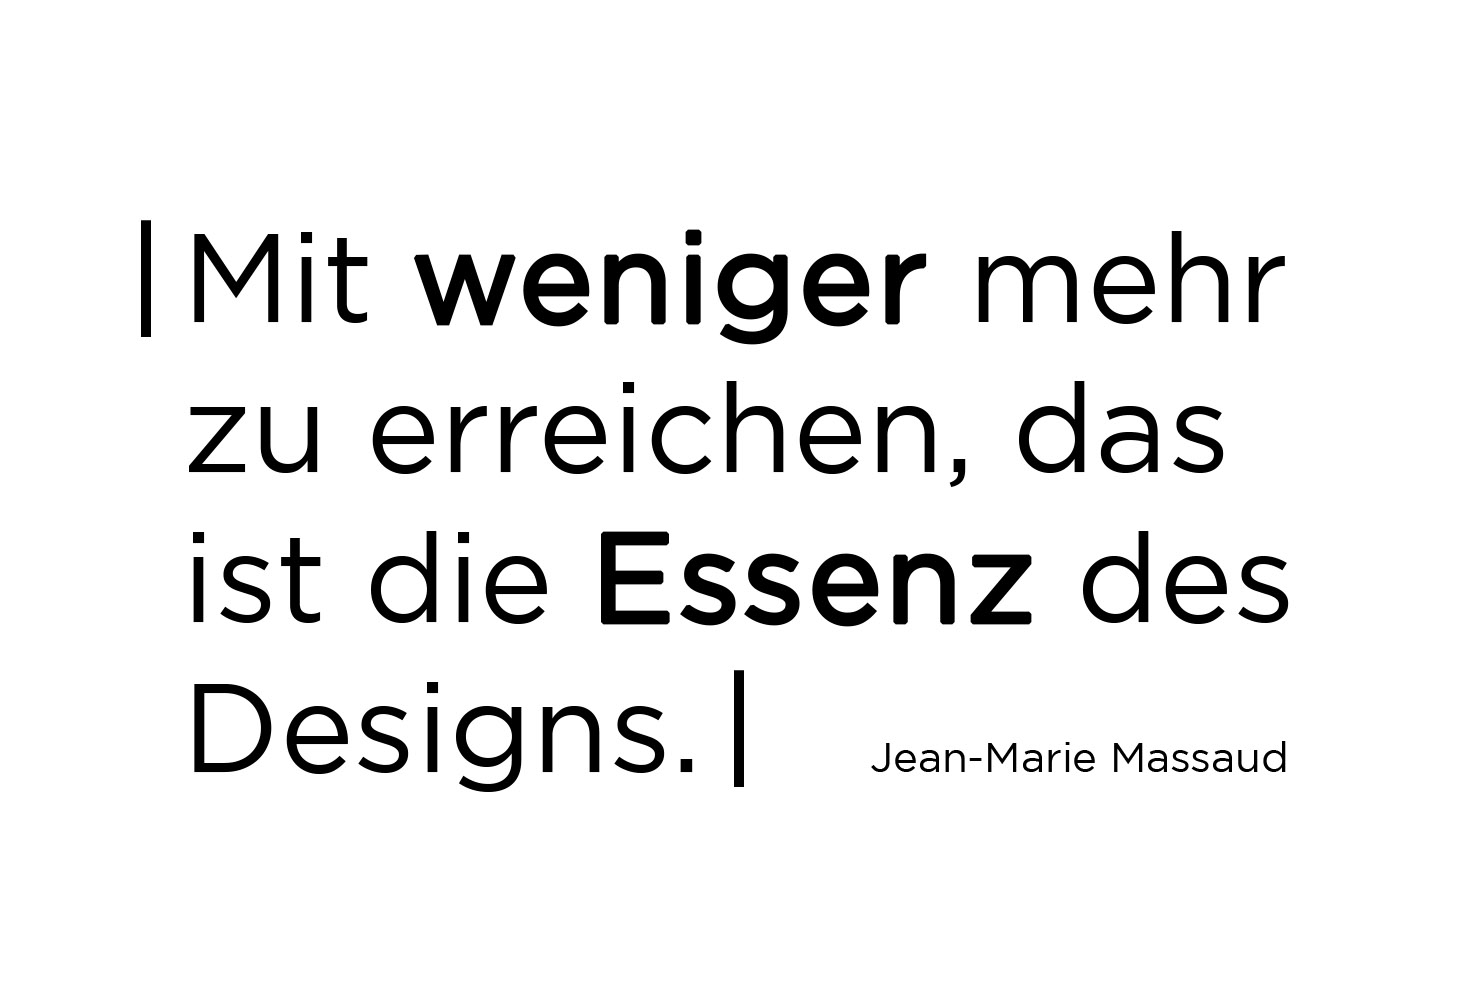 Mit weniger mehr zu erreichen, das ist die Essenz des Designs. Jean Marie Massaud